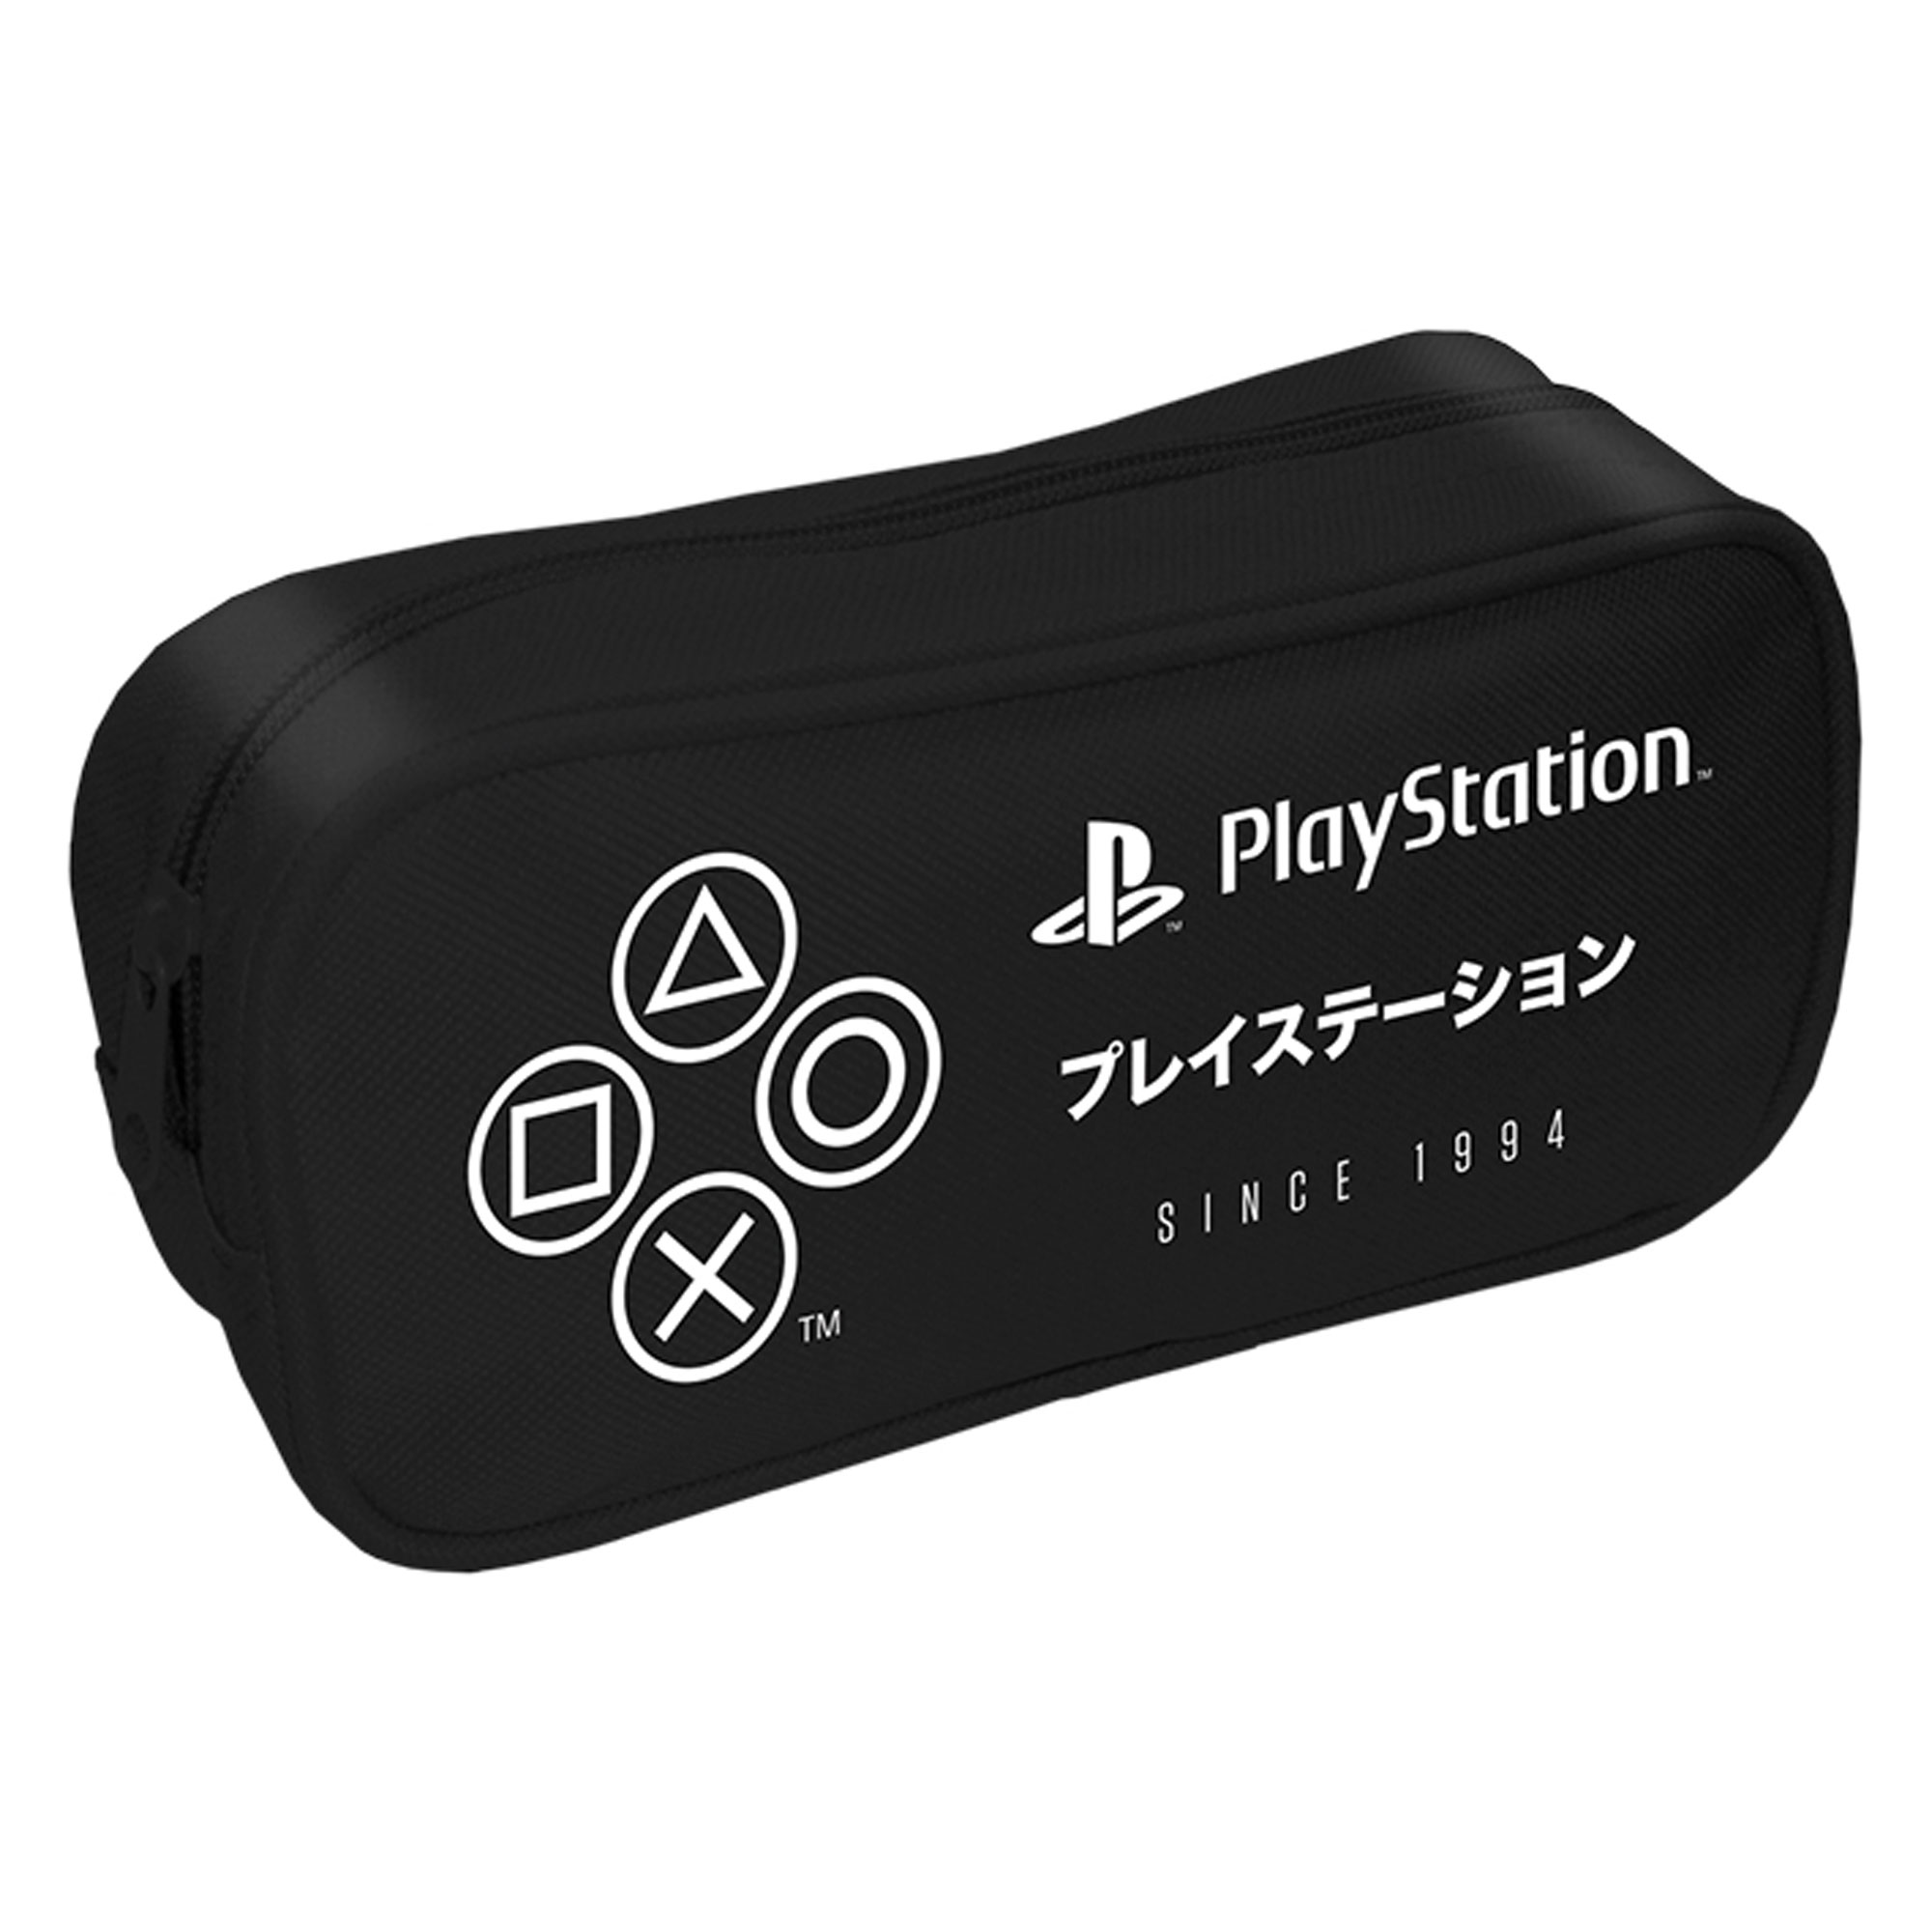 Playstation - black